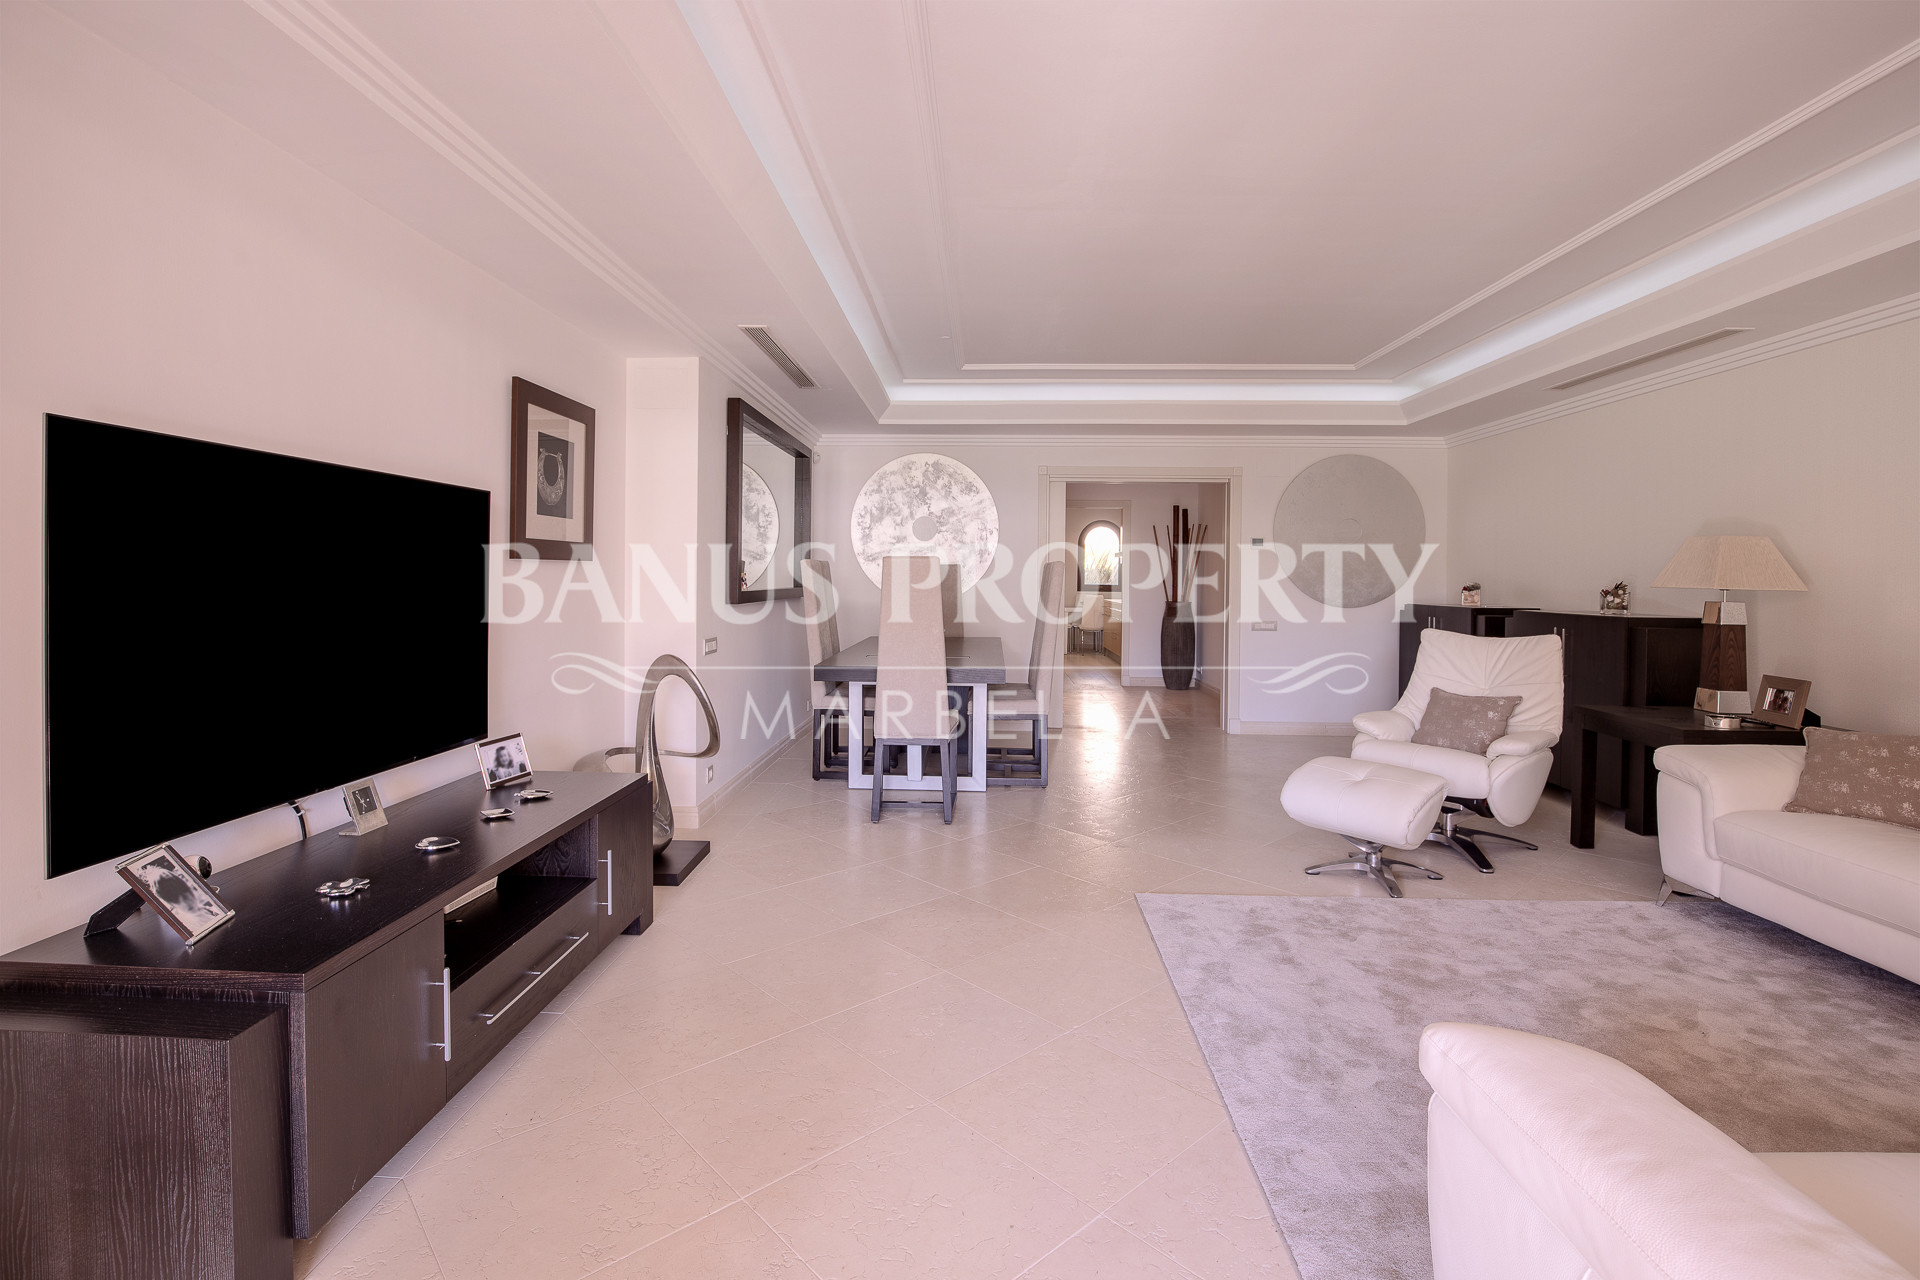 3-bedroom apartment with sunny and bright terrace in The Frontline Beach complex Los Granados del Mar- Estepona